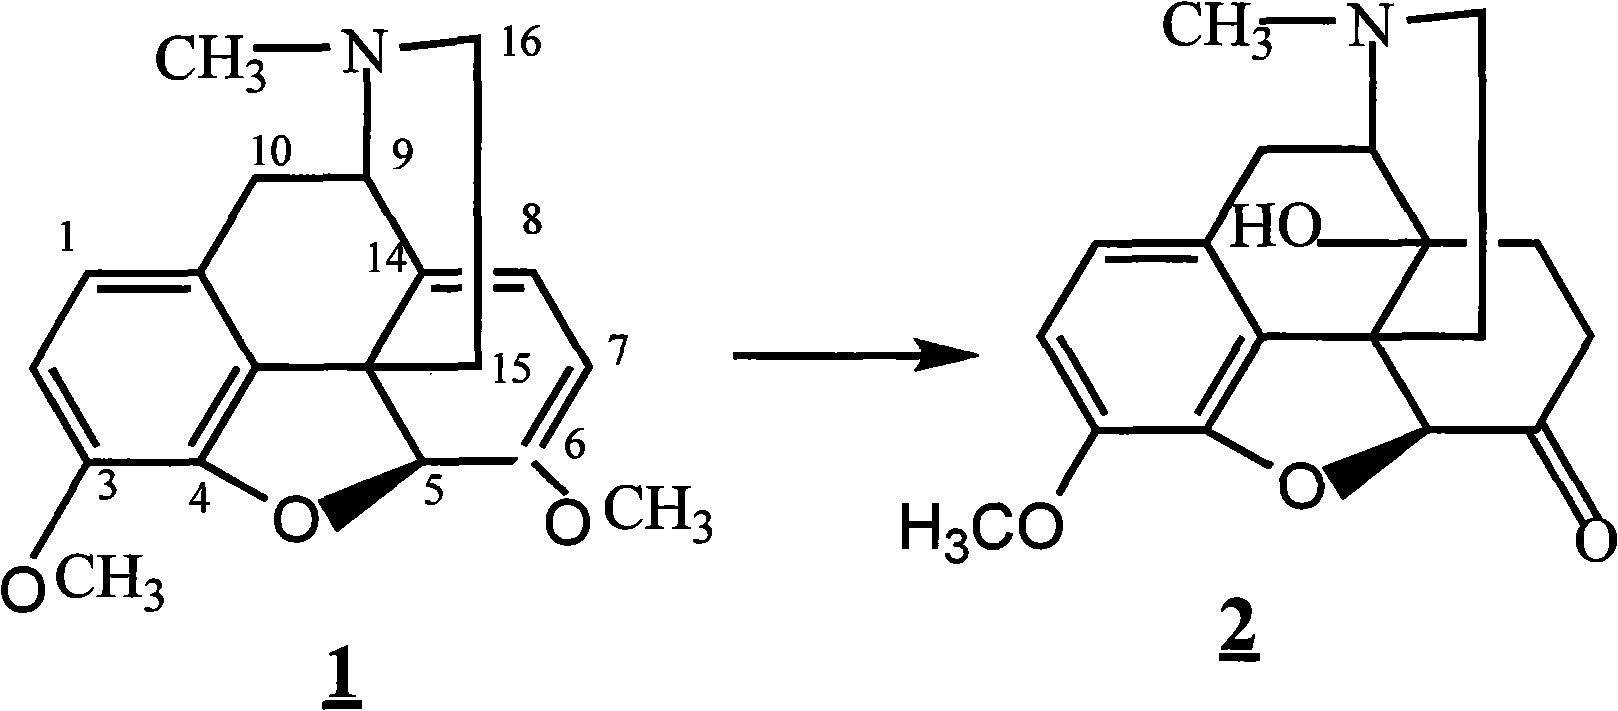 Method for synthesizing naloxone or naltrexone